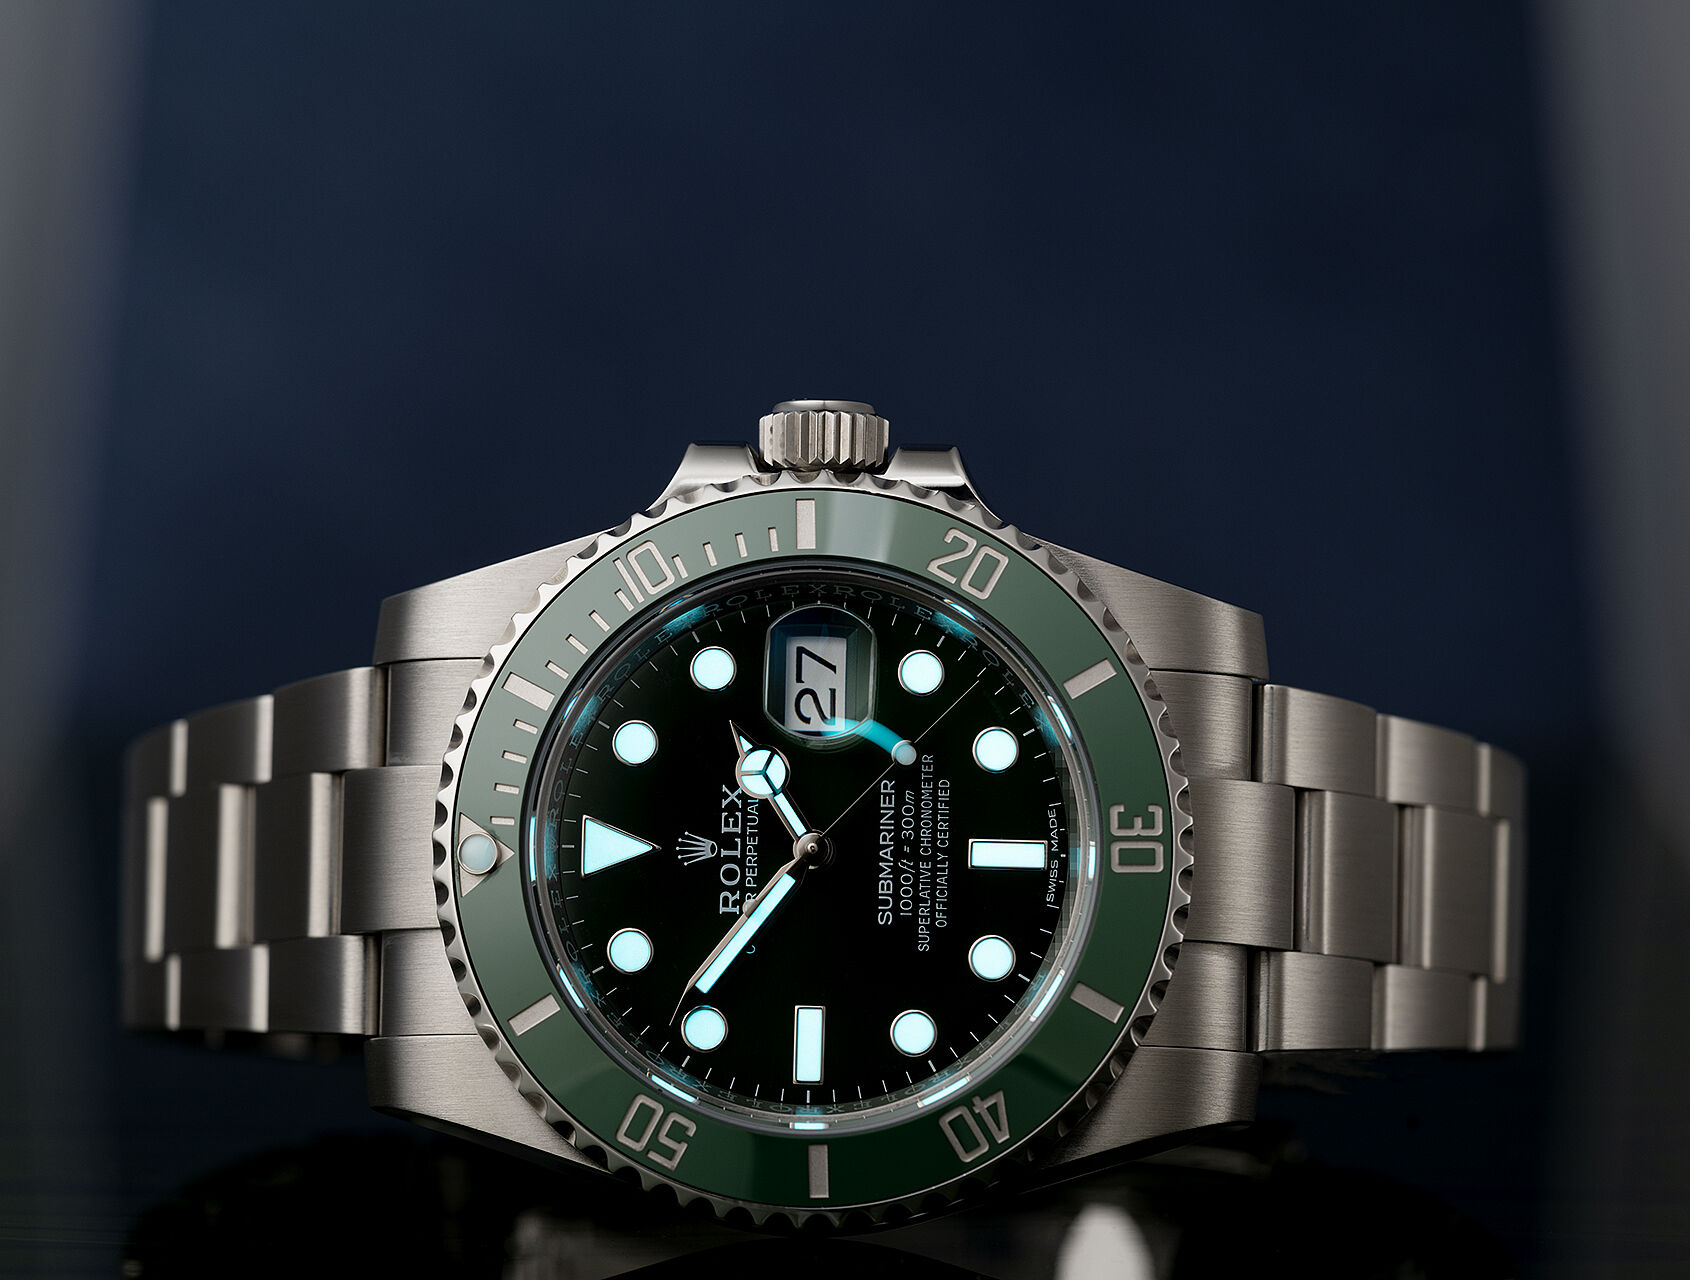 ref 116610LV | Rolex Warranty to 2023 | Rolex Submariner Date